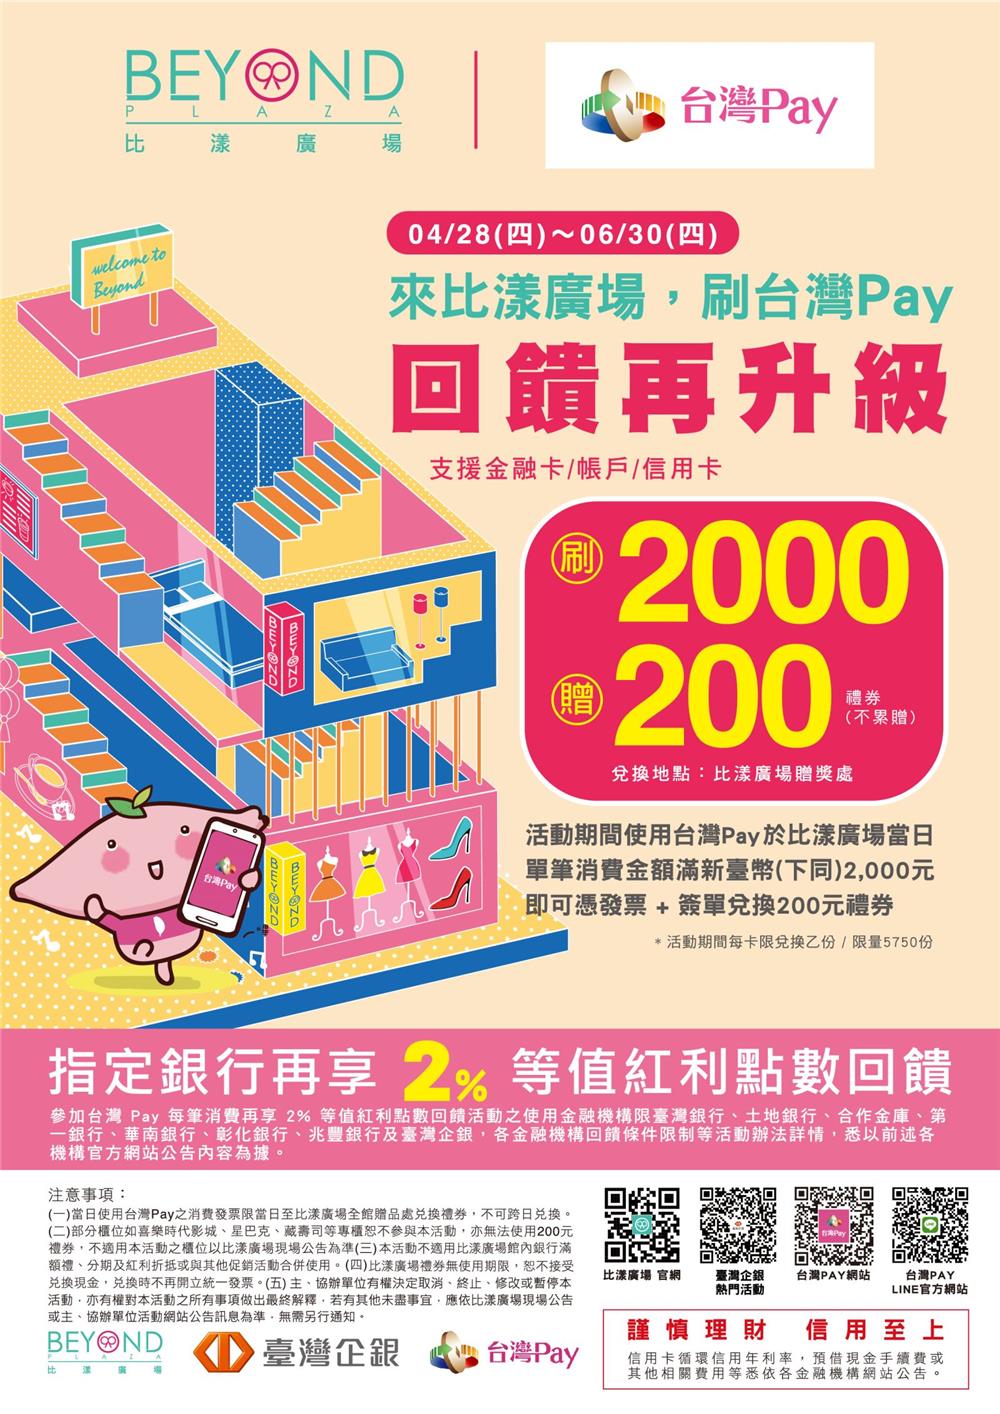 來比漾廣場刷台灣Pay回饋再升級